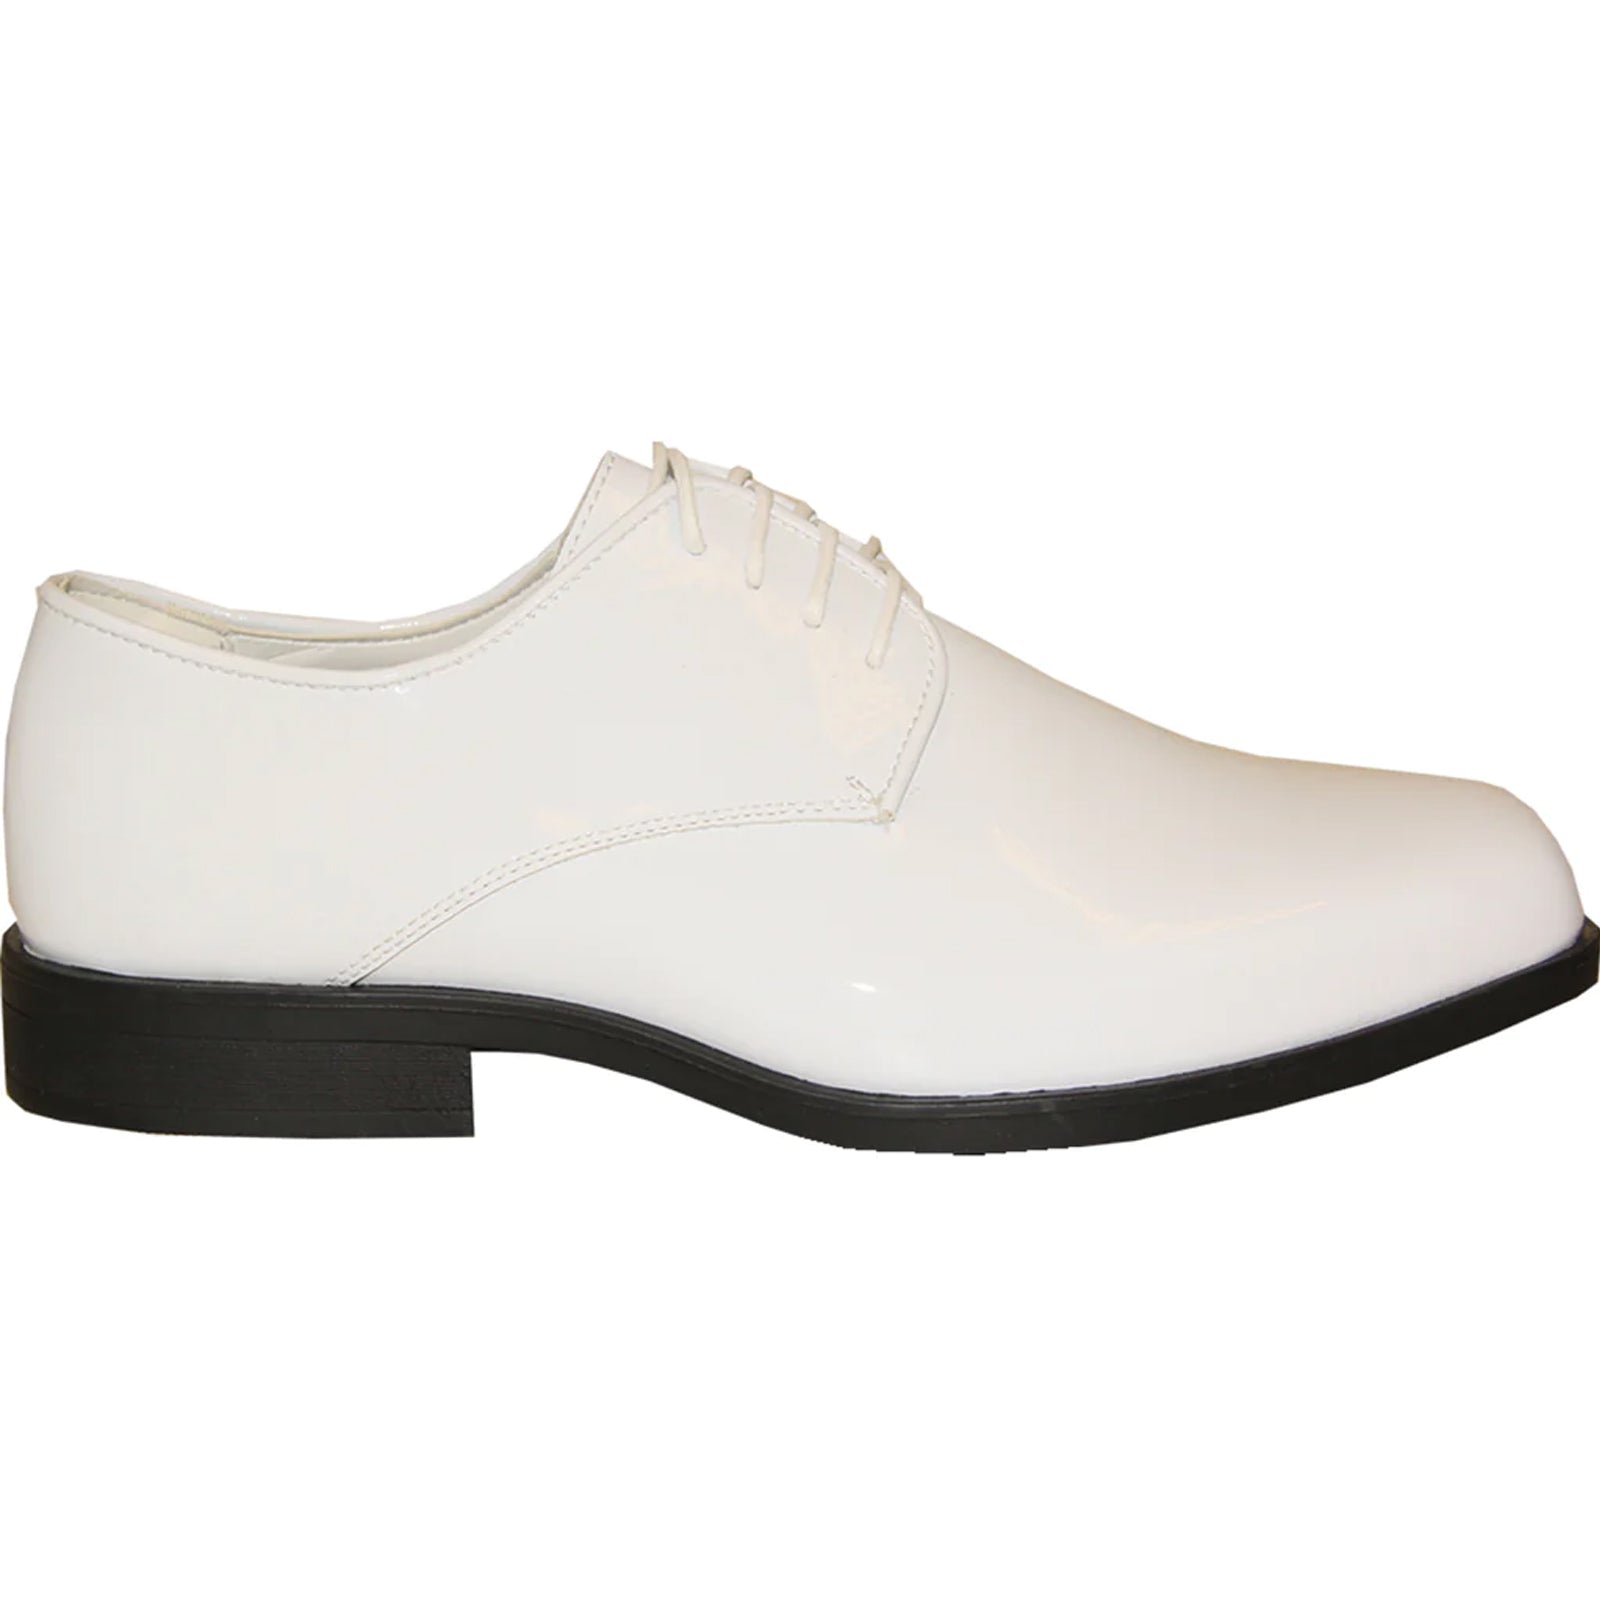 "White Patent Tuxedo Dress Shoe - Men's Classic Square Toe"